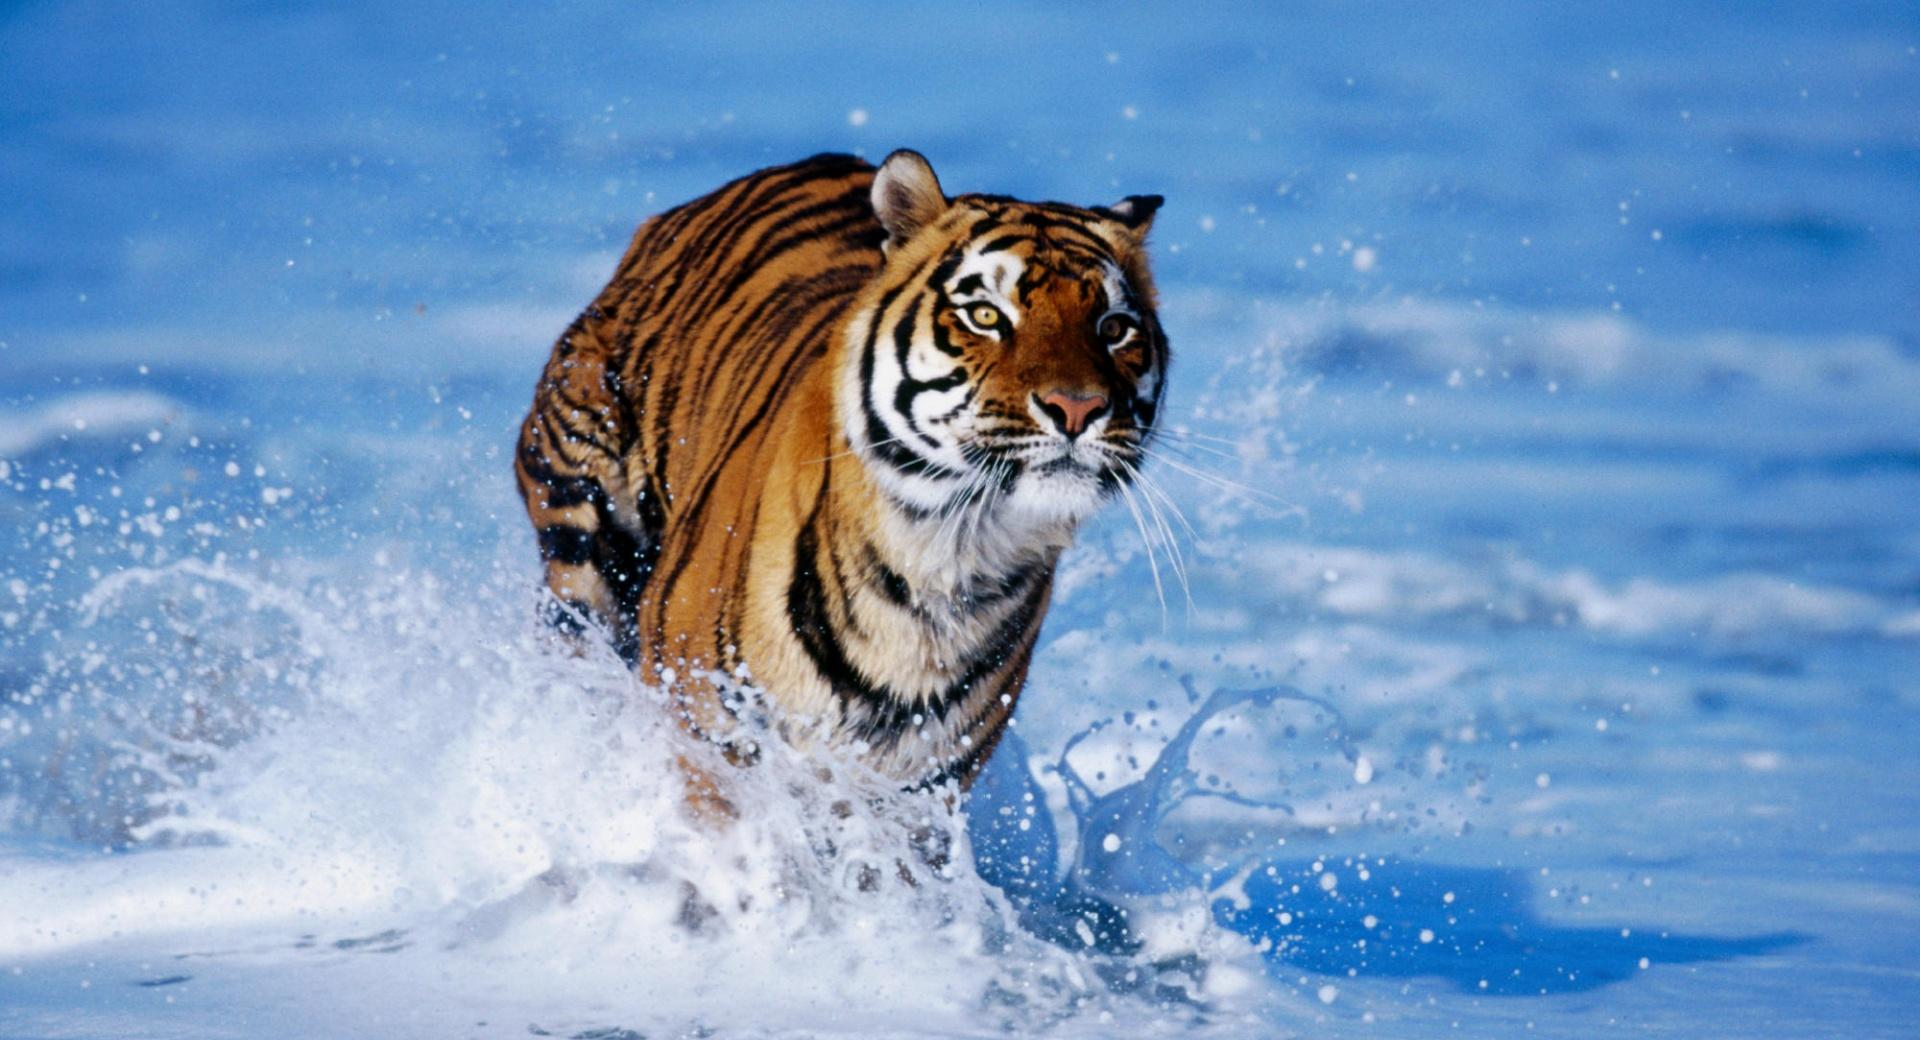 Bengal Tiger Panthera Tigris Tigris at 1024 x 1024 iPad size wallpapers HD quality